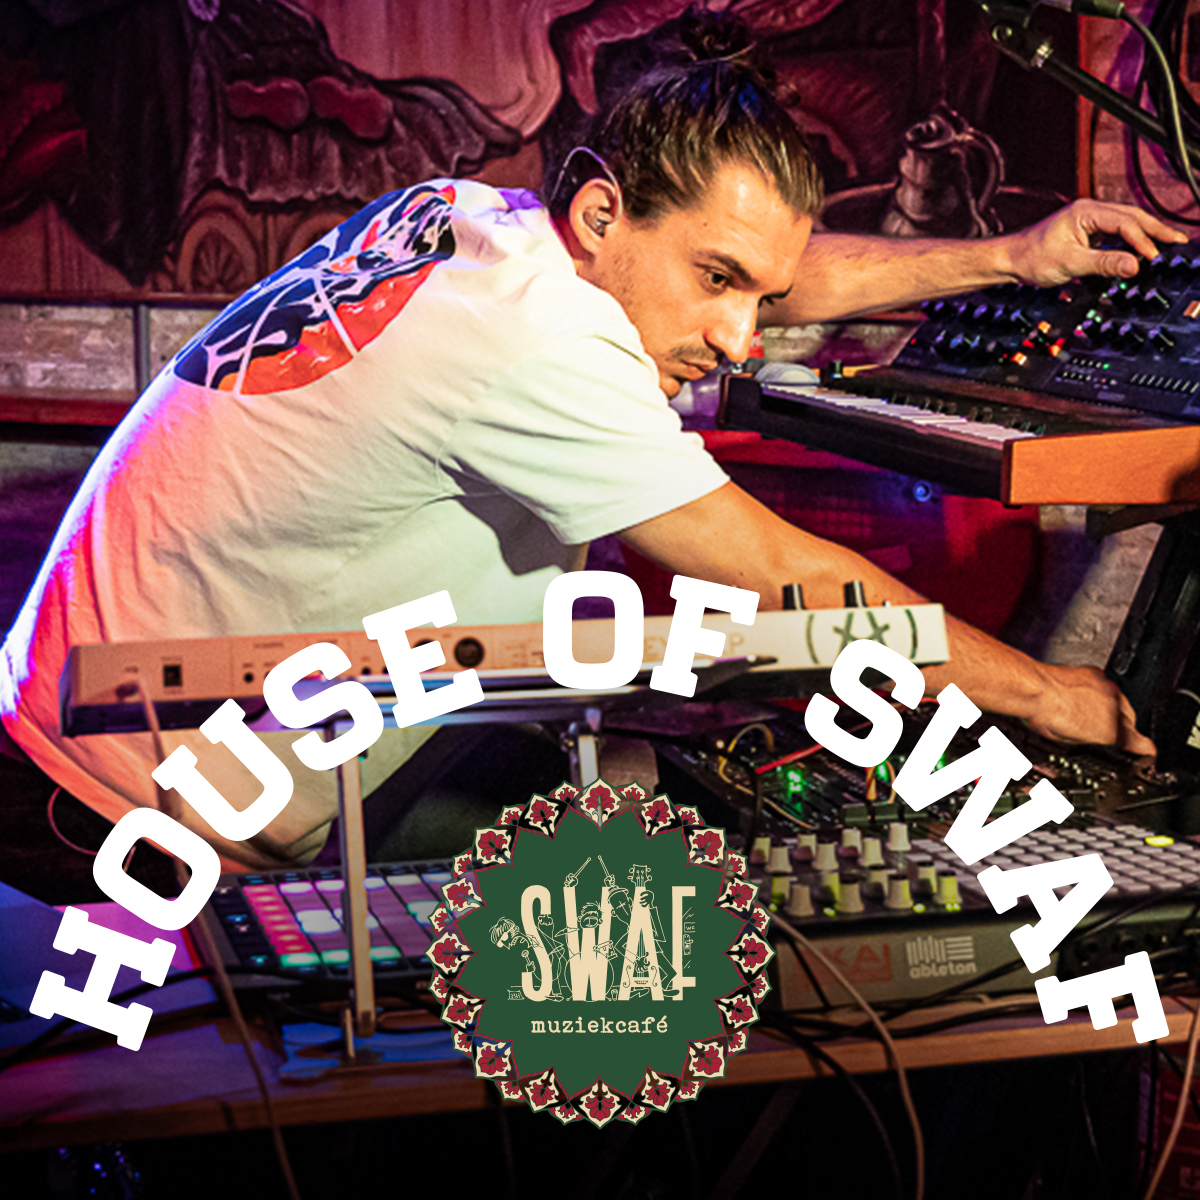 House of Swaf #juni